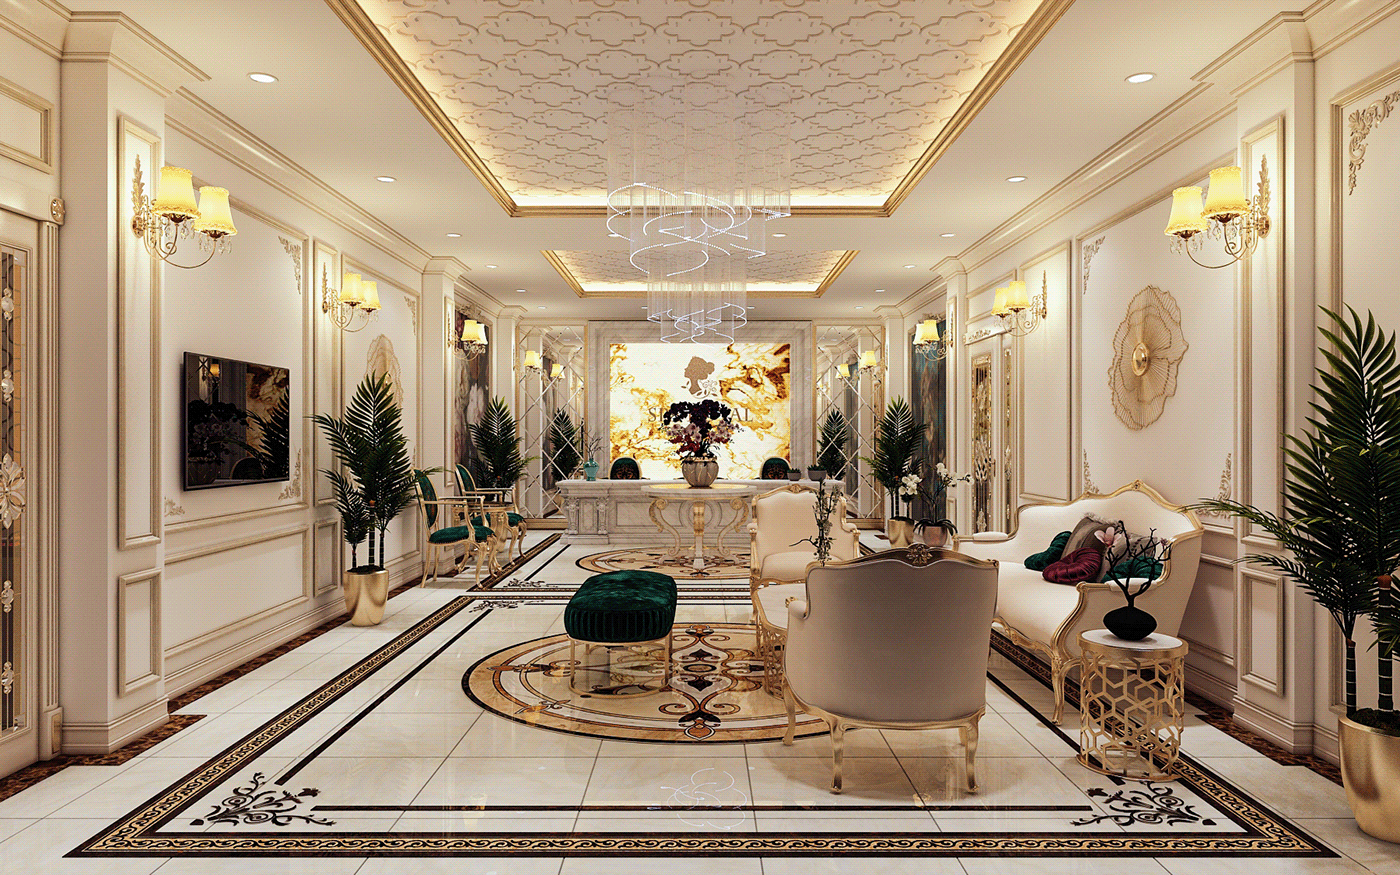 3ds max beauty corona interior design  Render salon Spa bathtub